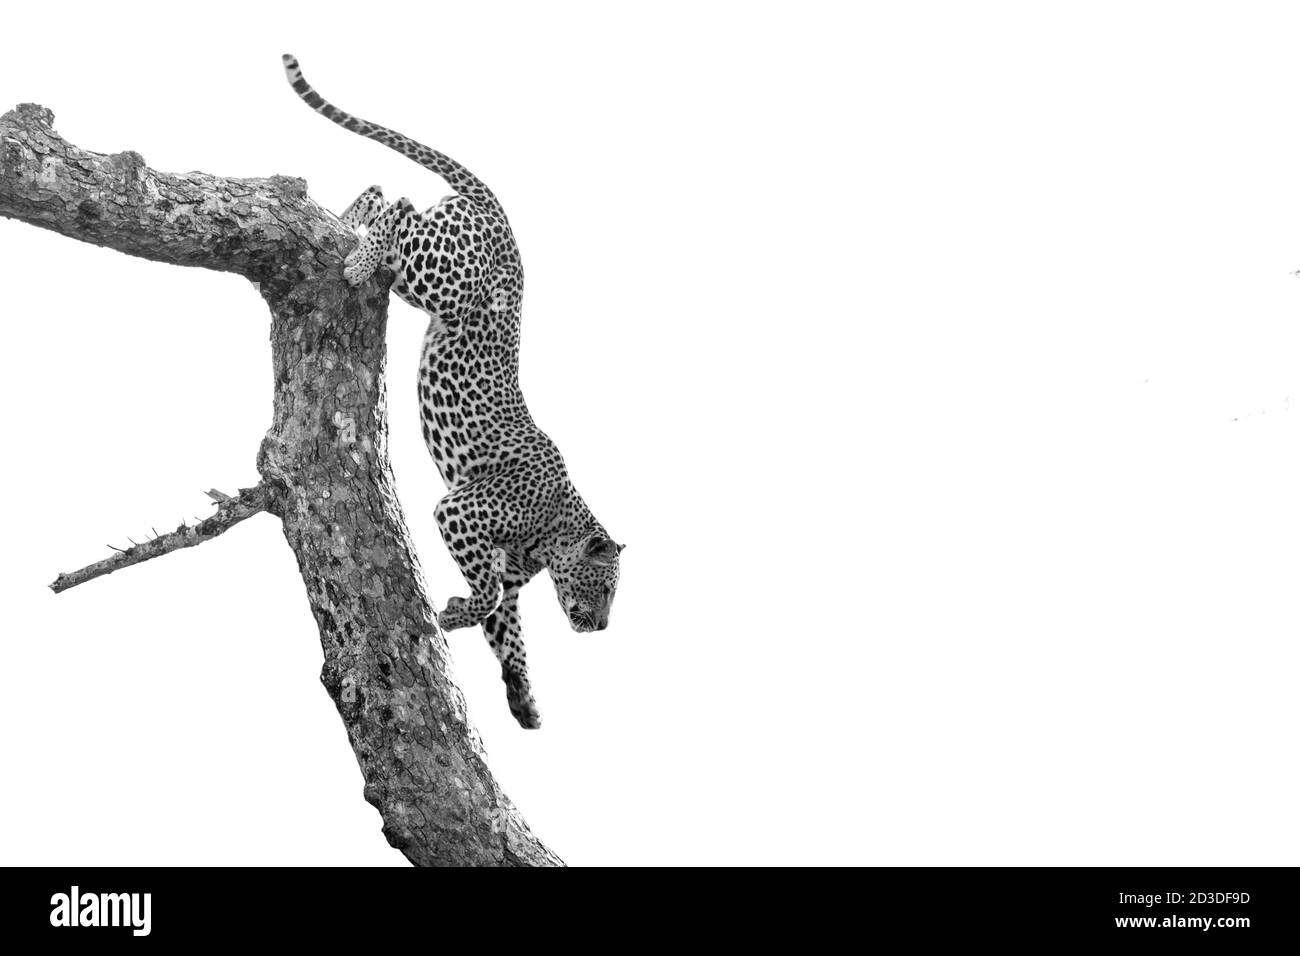 Un léopard, Panthera pardus, monte sur une branche d'arbre, noir et blanc, avec un arrière-plan bien foulé Banque D'Images